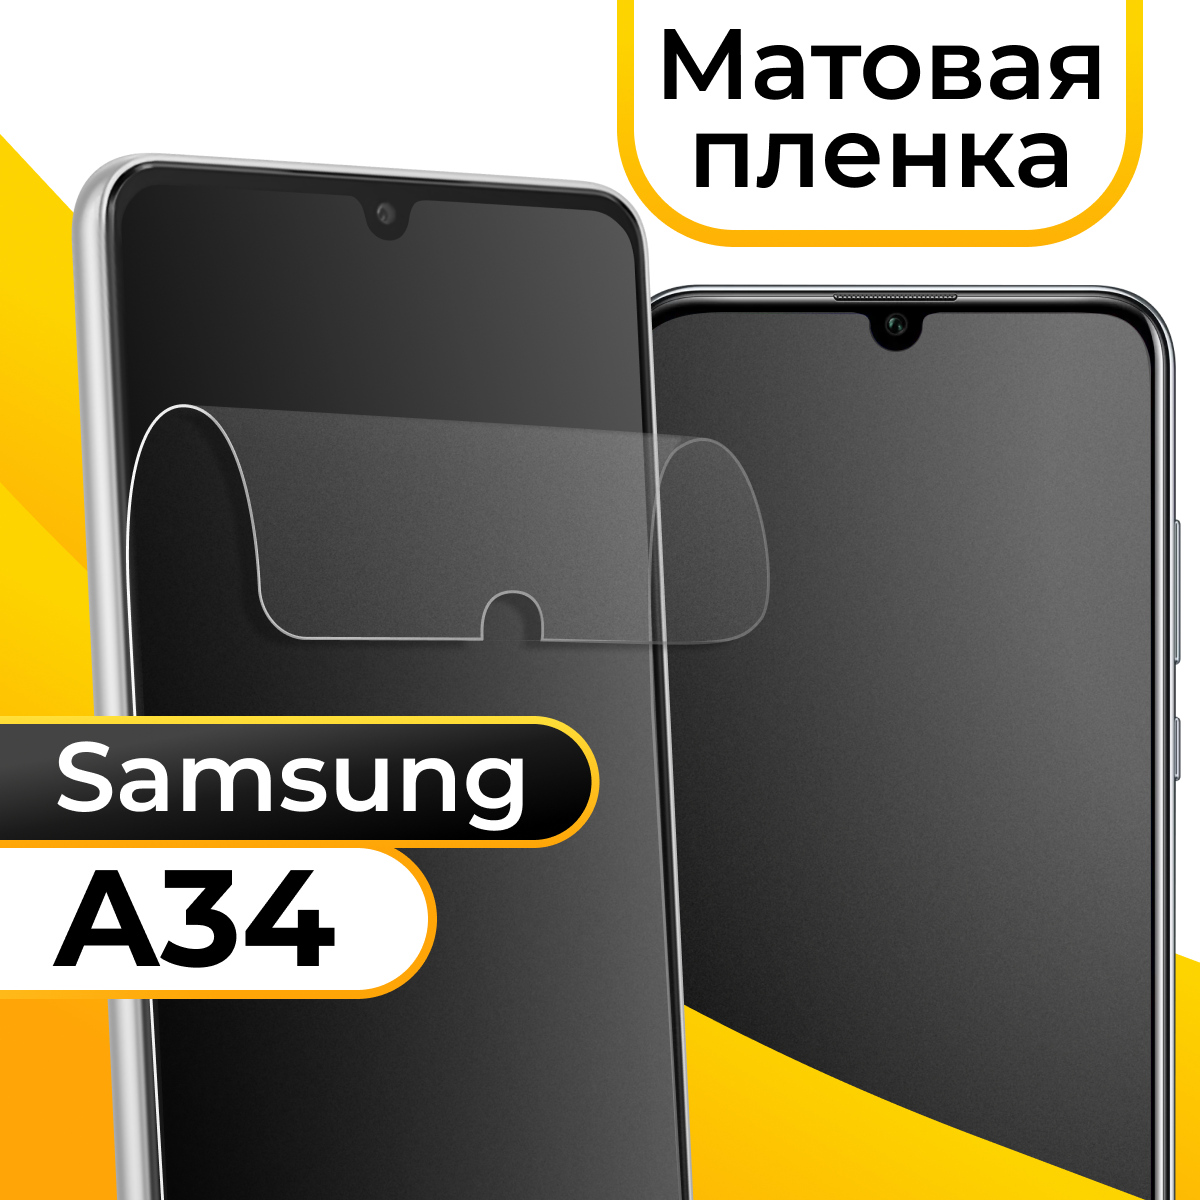 Комплект 2 шт. Матовая пленка для смартфона Samsung Galaxy A34 / Защитная пленка на телефон Самсунг Галакси А34 / Гидрогелевая самовосстанавливающаяся пленка